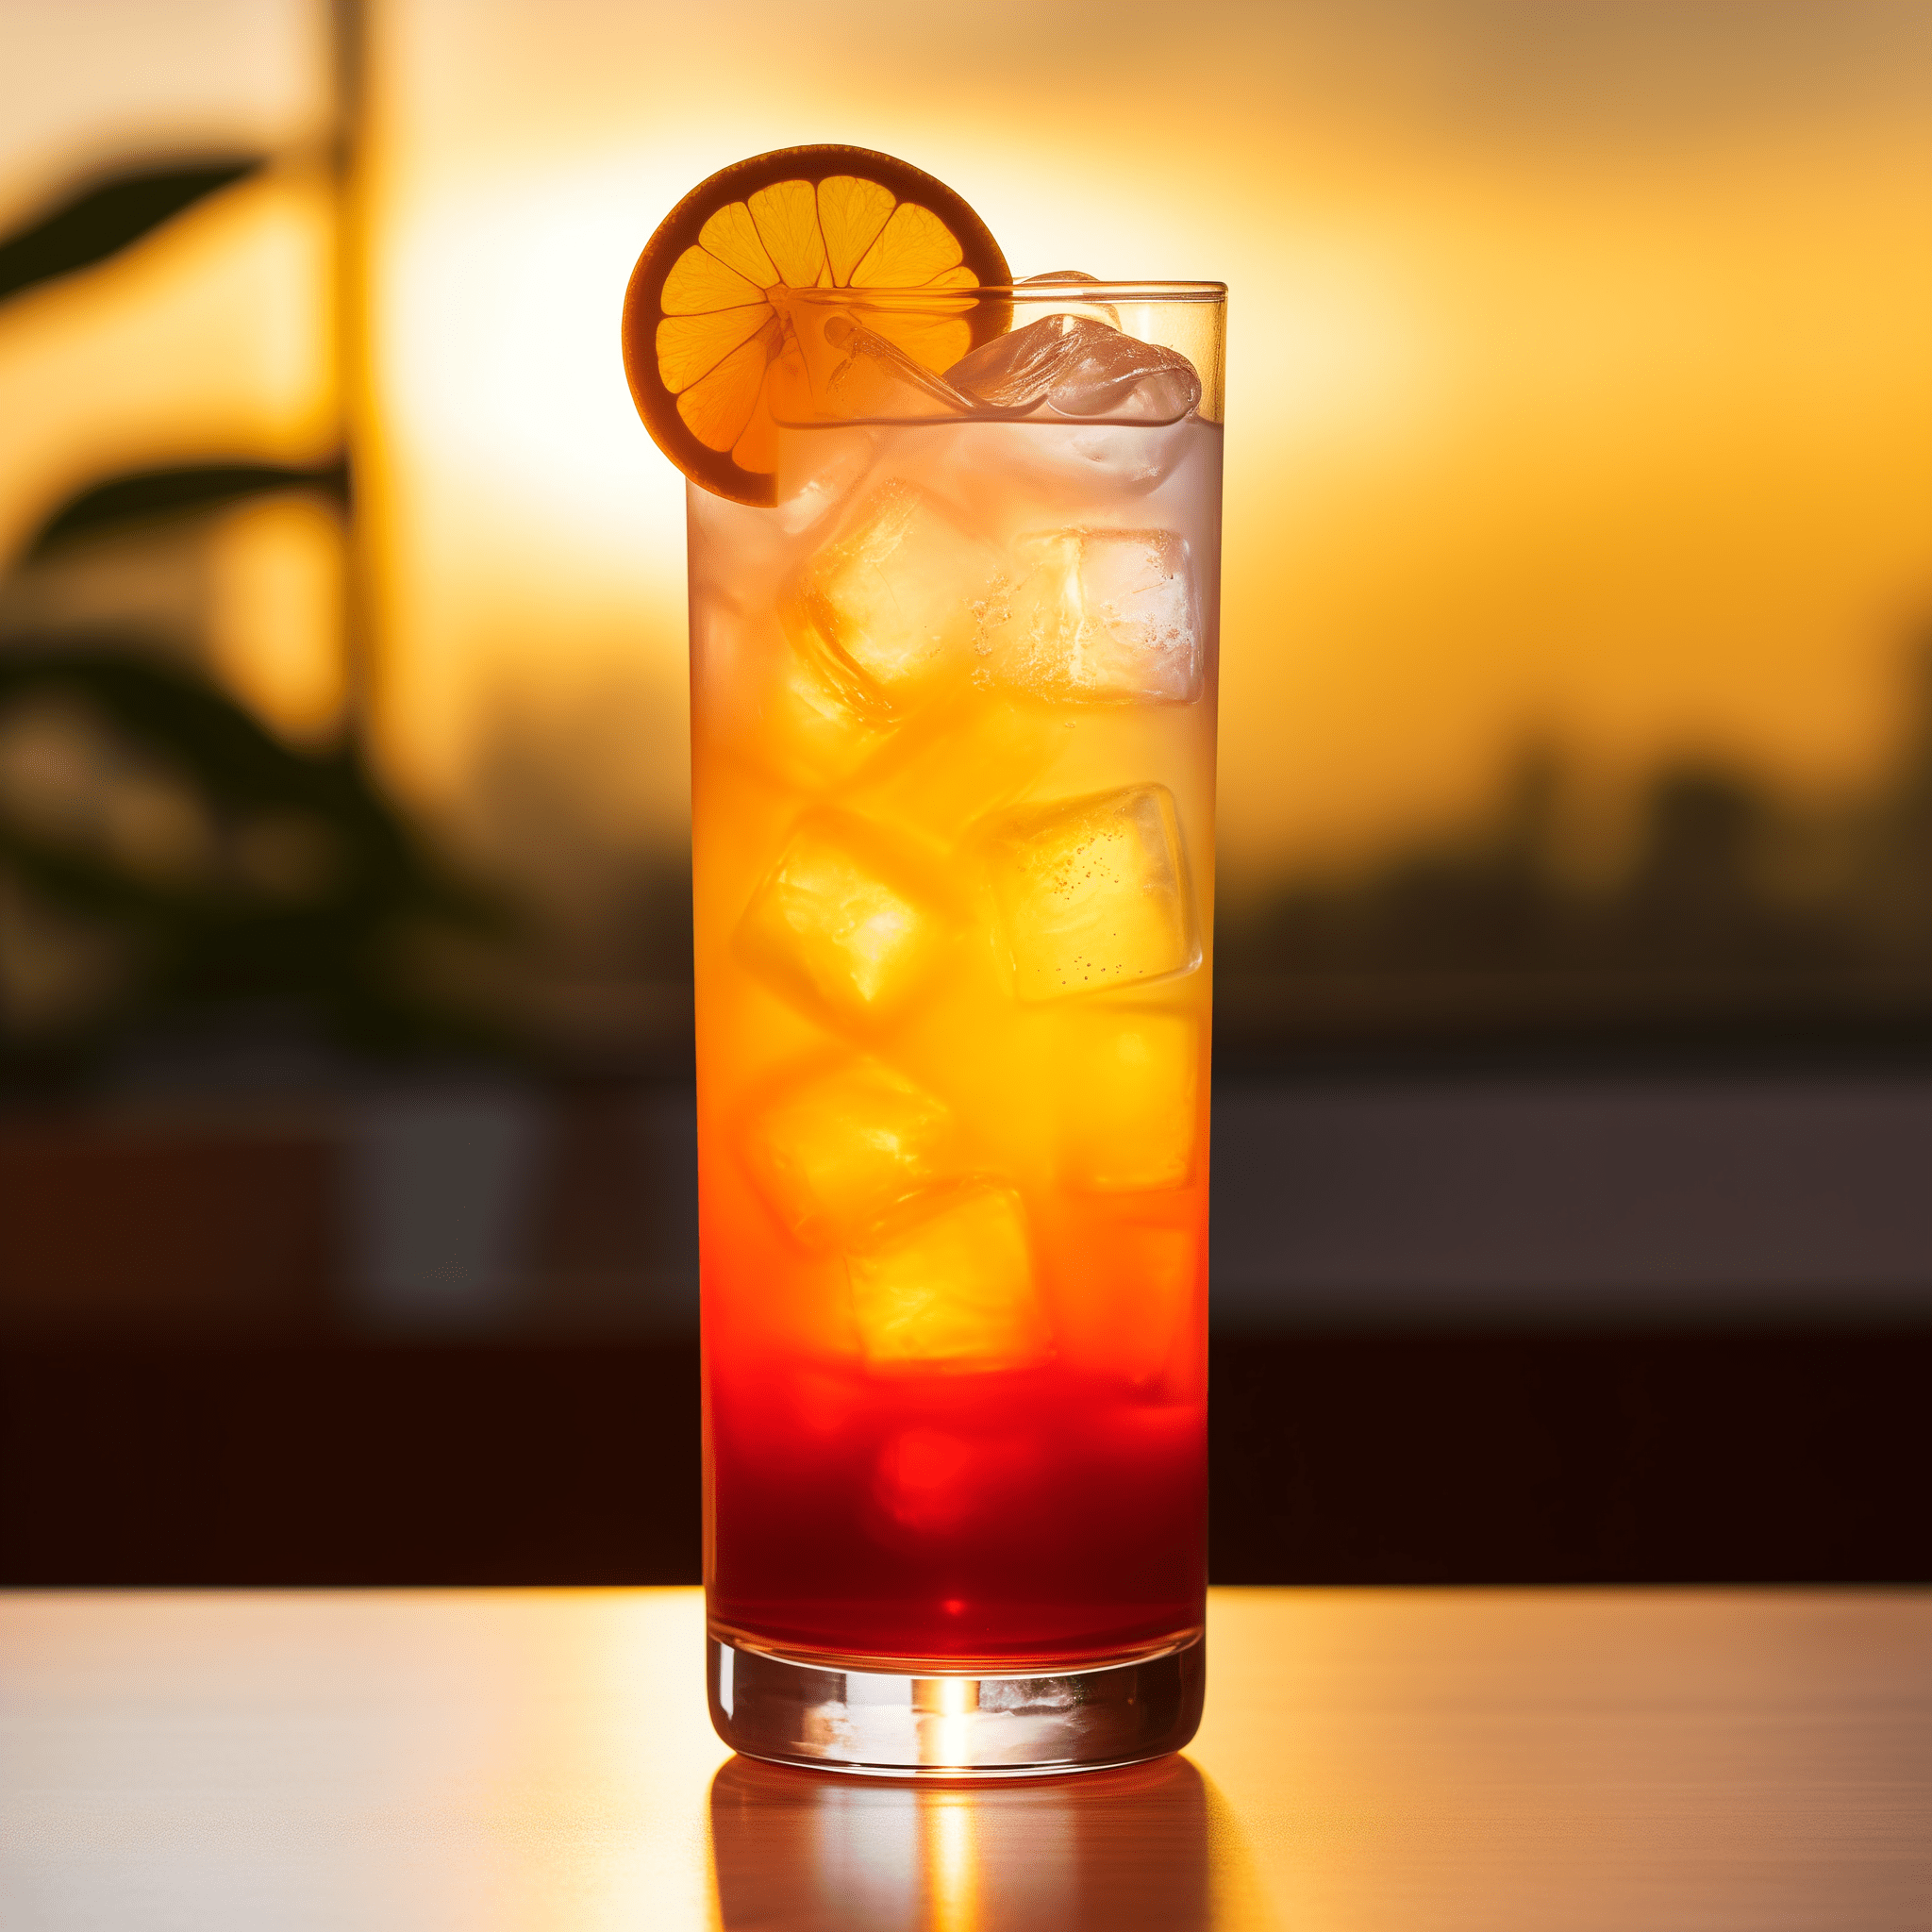 Sunset in Paradise Cóctel Receta - El sabor de Sunset in Paradise es una mezcla armoniosa de sabores dulces y ácidos. Es una mezcla refrescante y afrutada con un toque de cítricos y un final suave y aterciopelado.